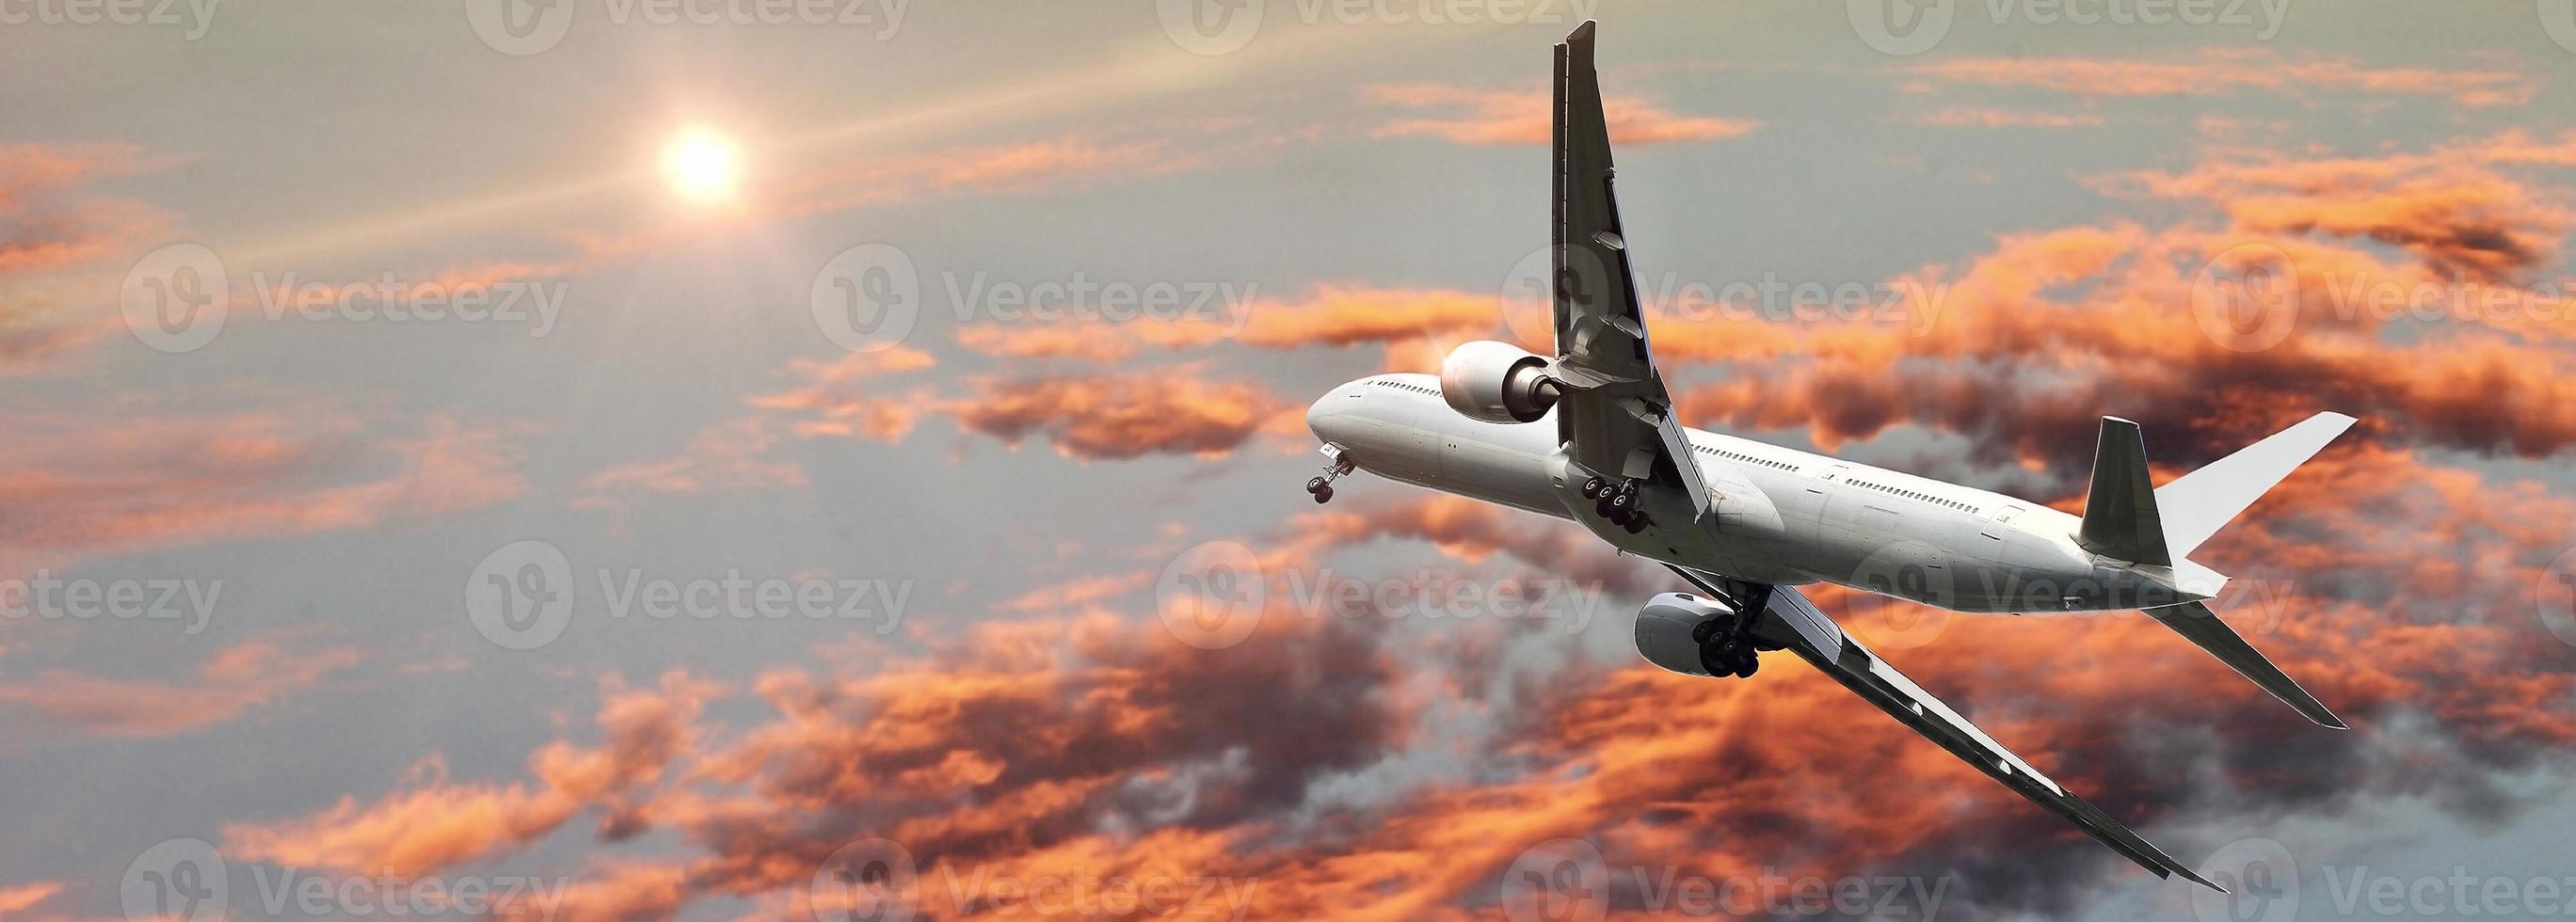 Avion commercial en vol contre le ciel coloré photo